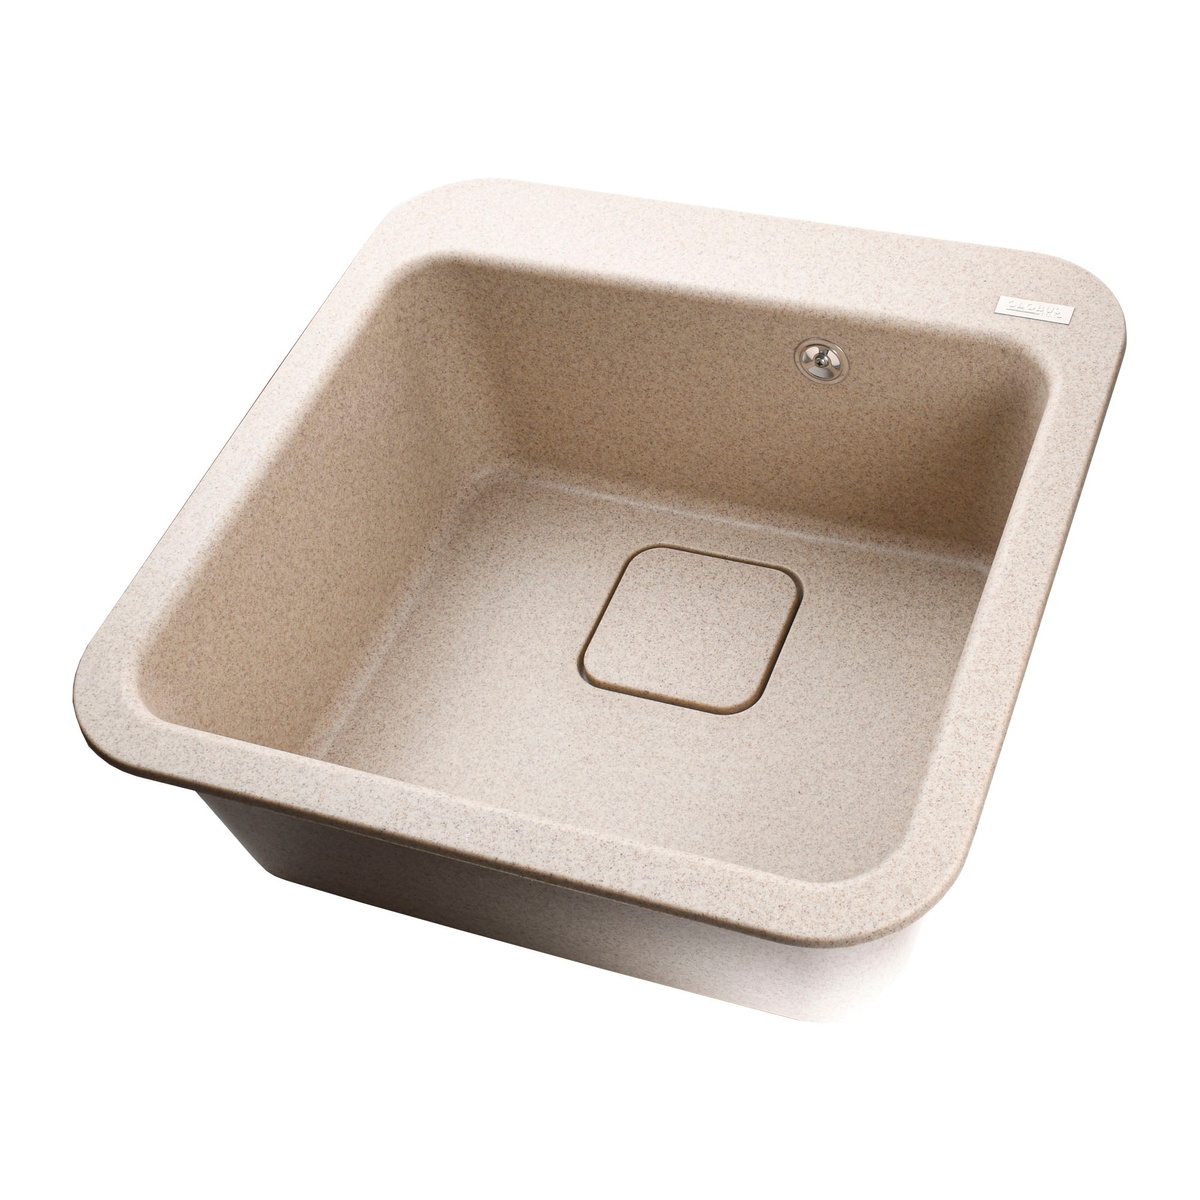 Мийка для кухні гранітна квадратна GLOBUS LUX BARBORA 510x510x190мм без сифону бежева 000008114